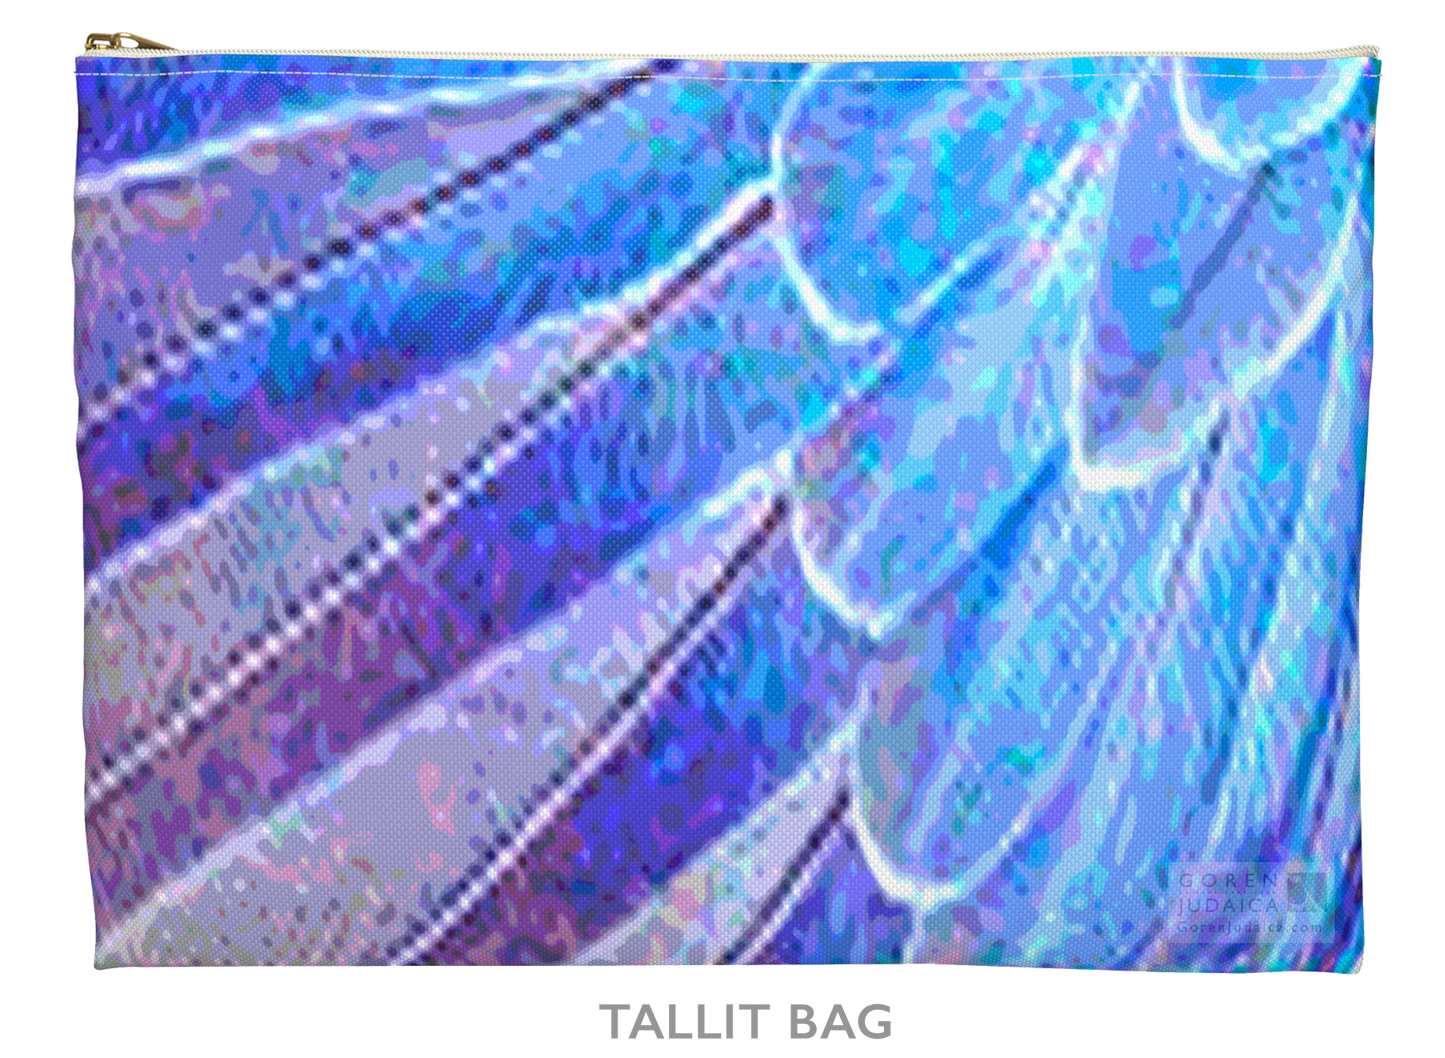 Wing tallit